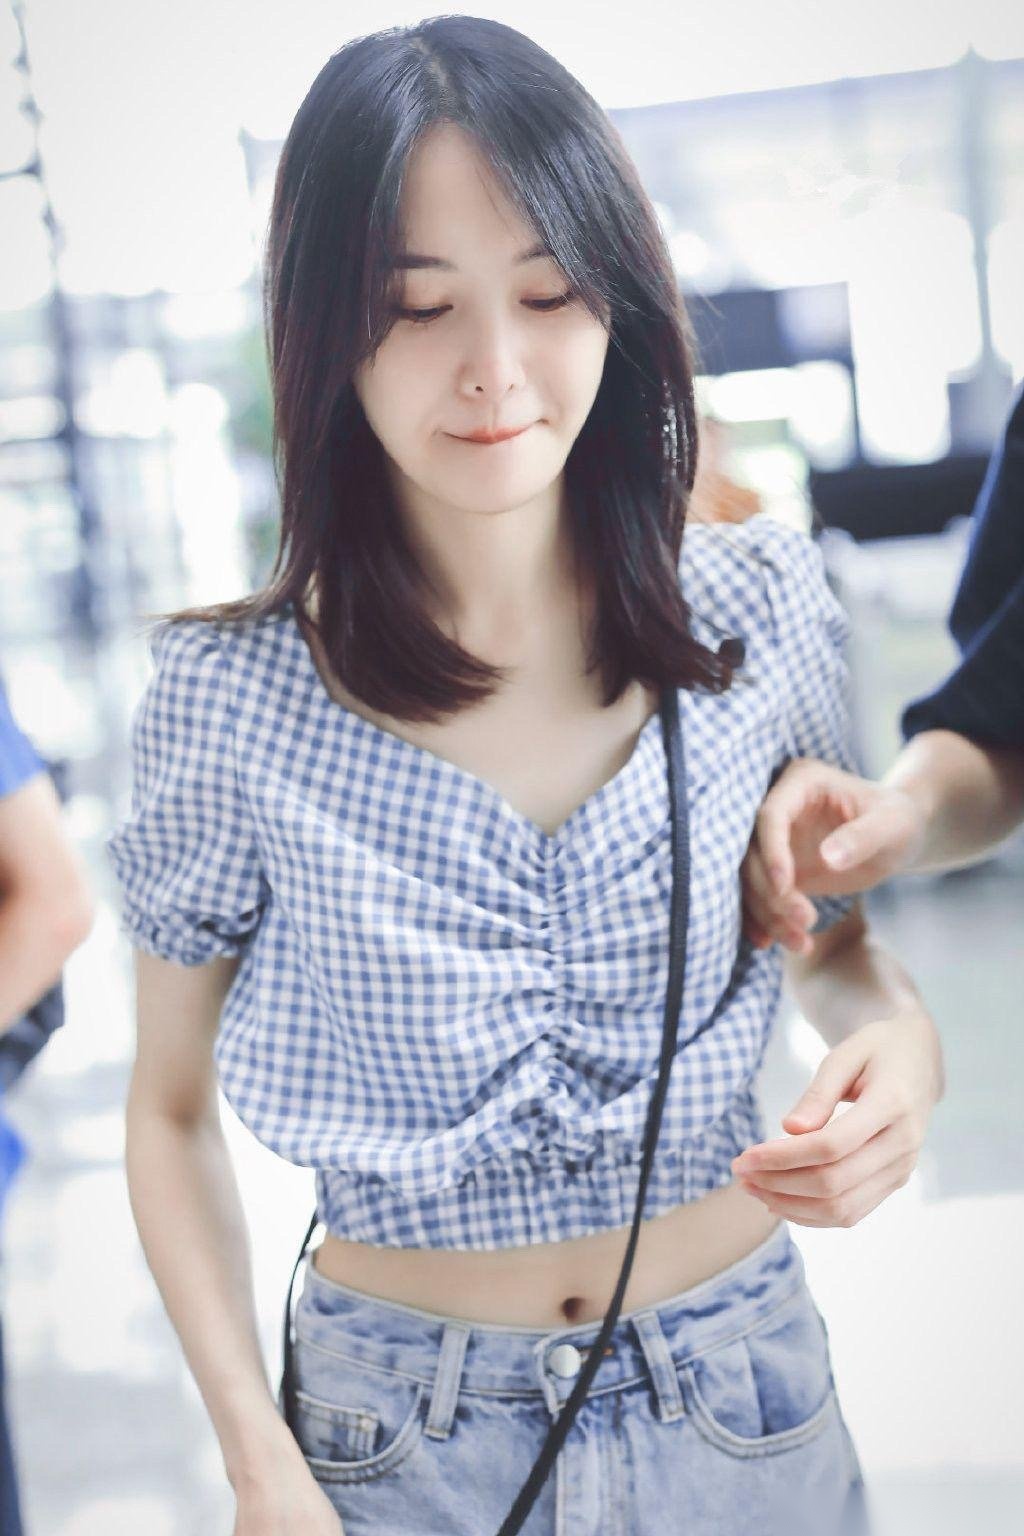 2019年6月20日,郑爽现身上海机场,当天她身穿蓝白格子上衣露肚脐秀